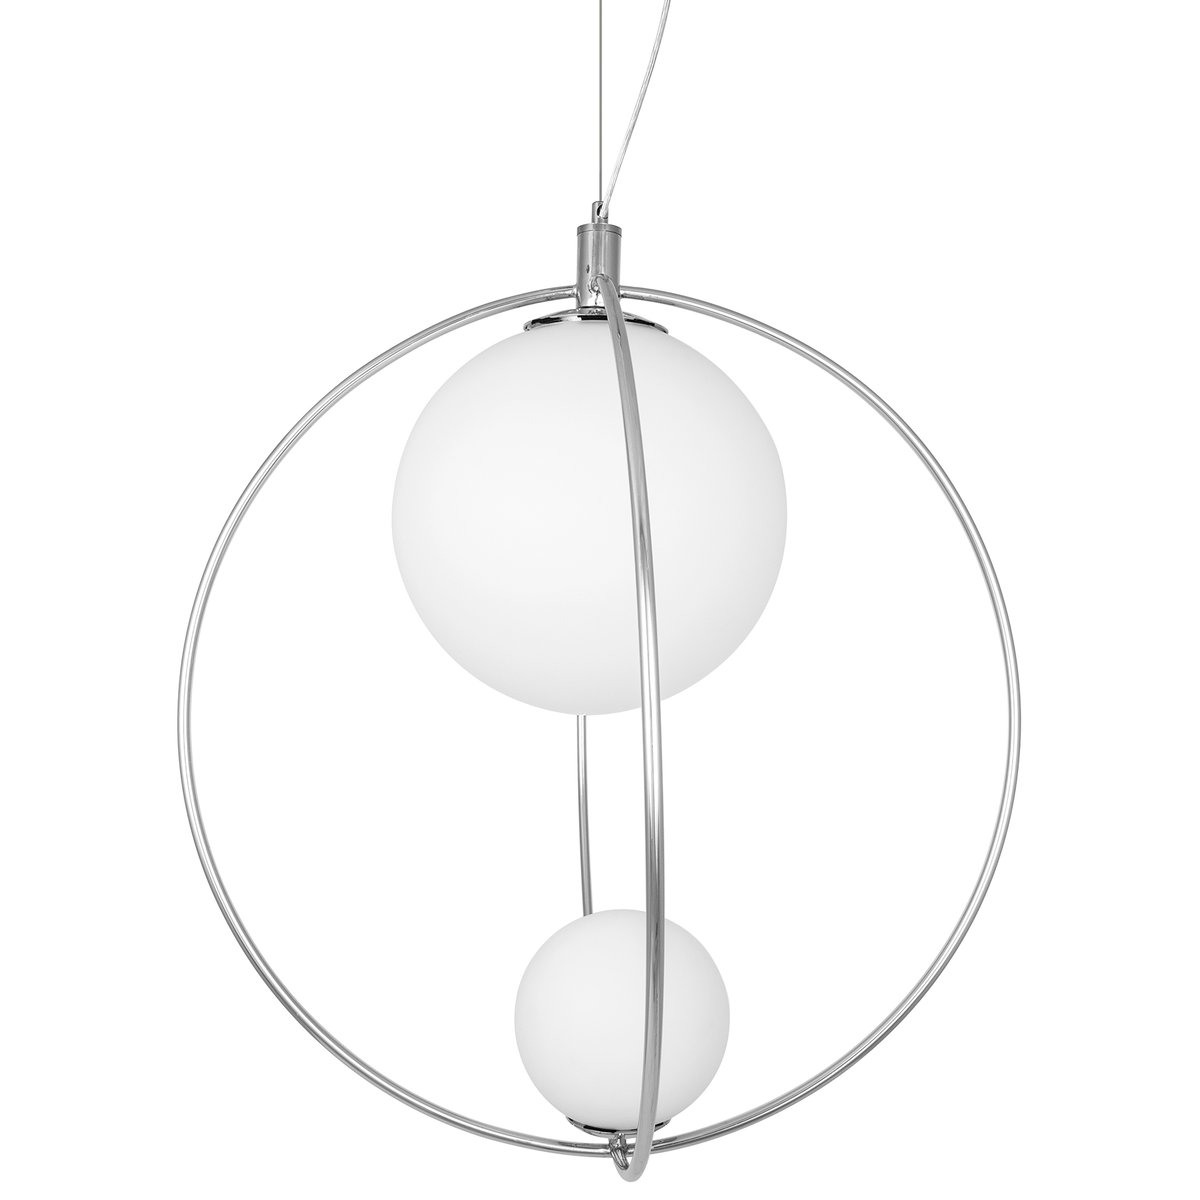 Globen Lighting Saint plafondlamp Ø60 cm Chroom